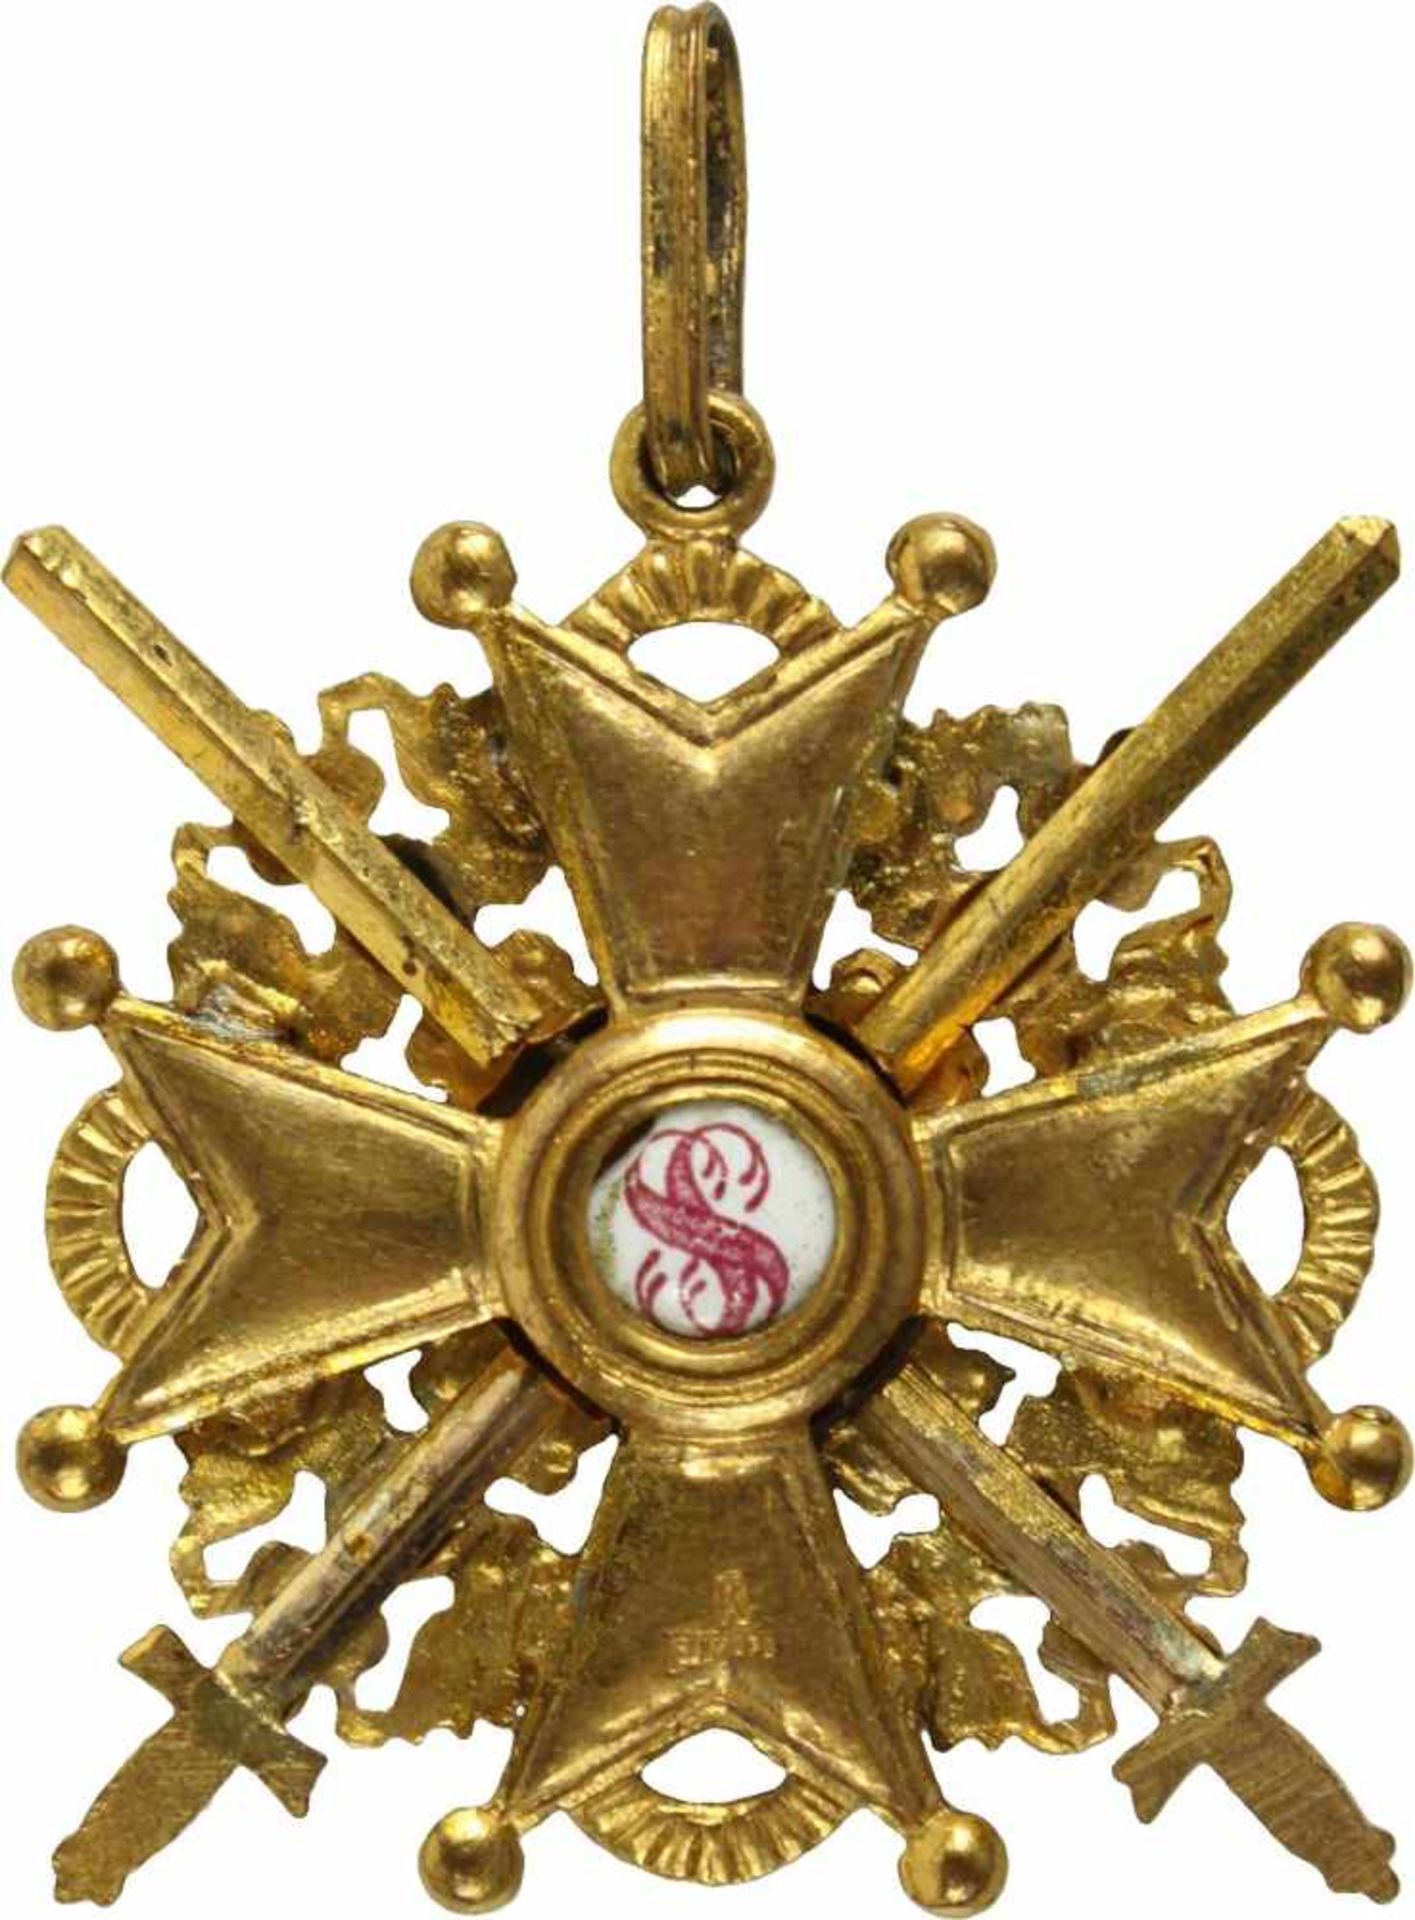 St. Stanislaus-Orden,Kreuz 3. Klasse mit Schwertern. Kreuz Bronze vergoldet und emailliert, 38mm, - Bild 2 aus 2